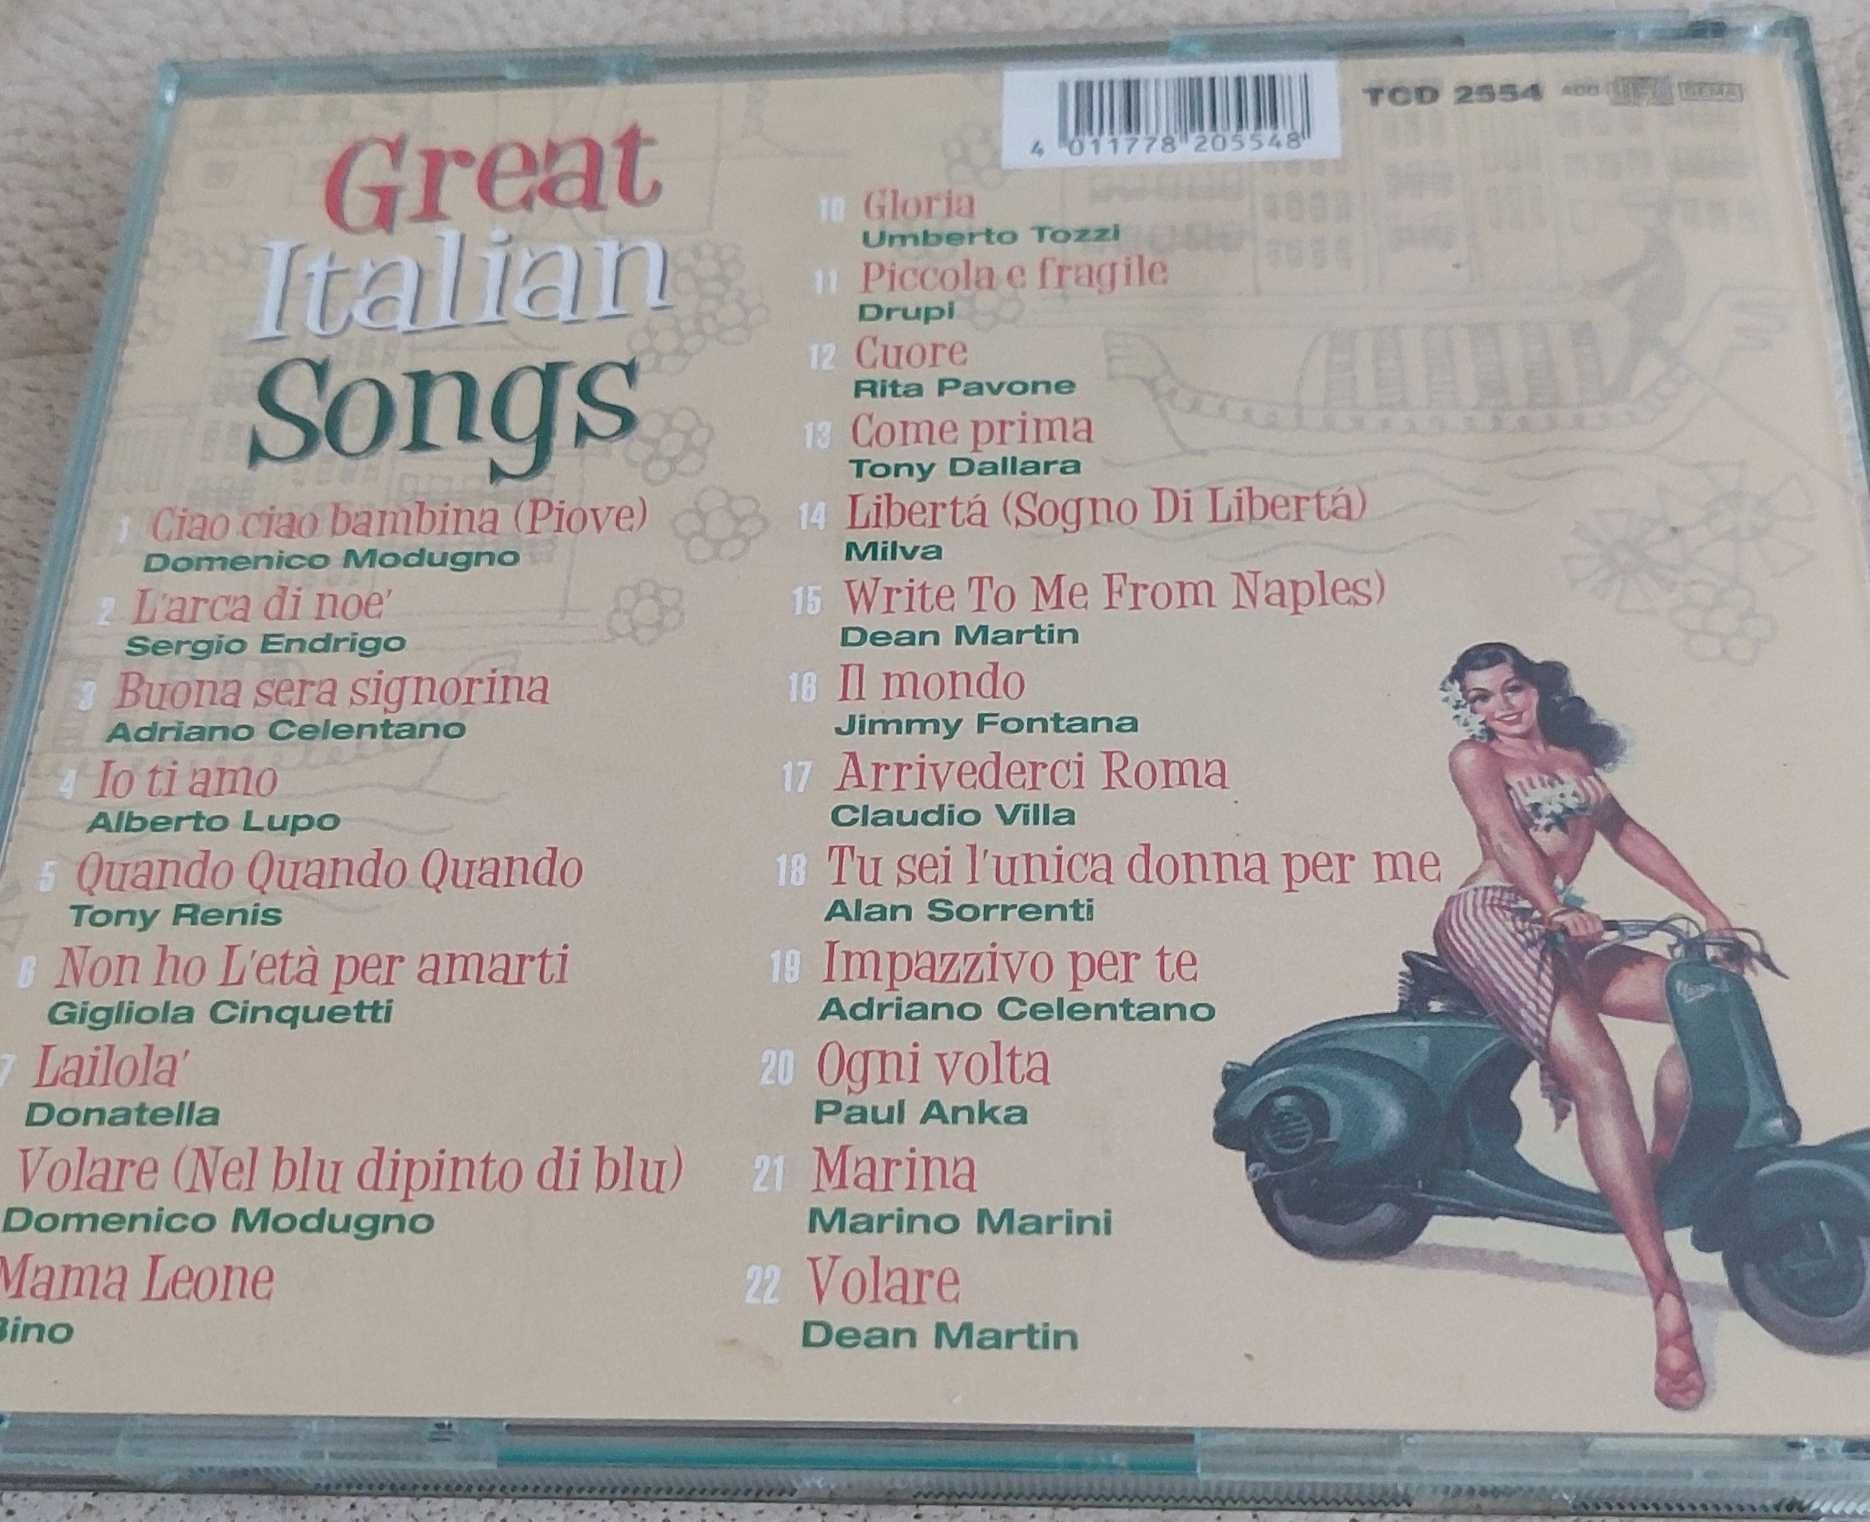 Great Italian Songs, kompilacja hitów z 60's i 70's, płyta CD